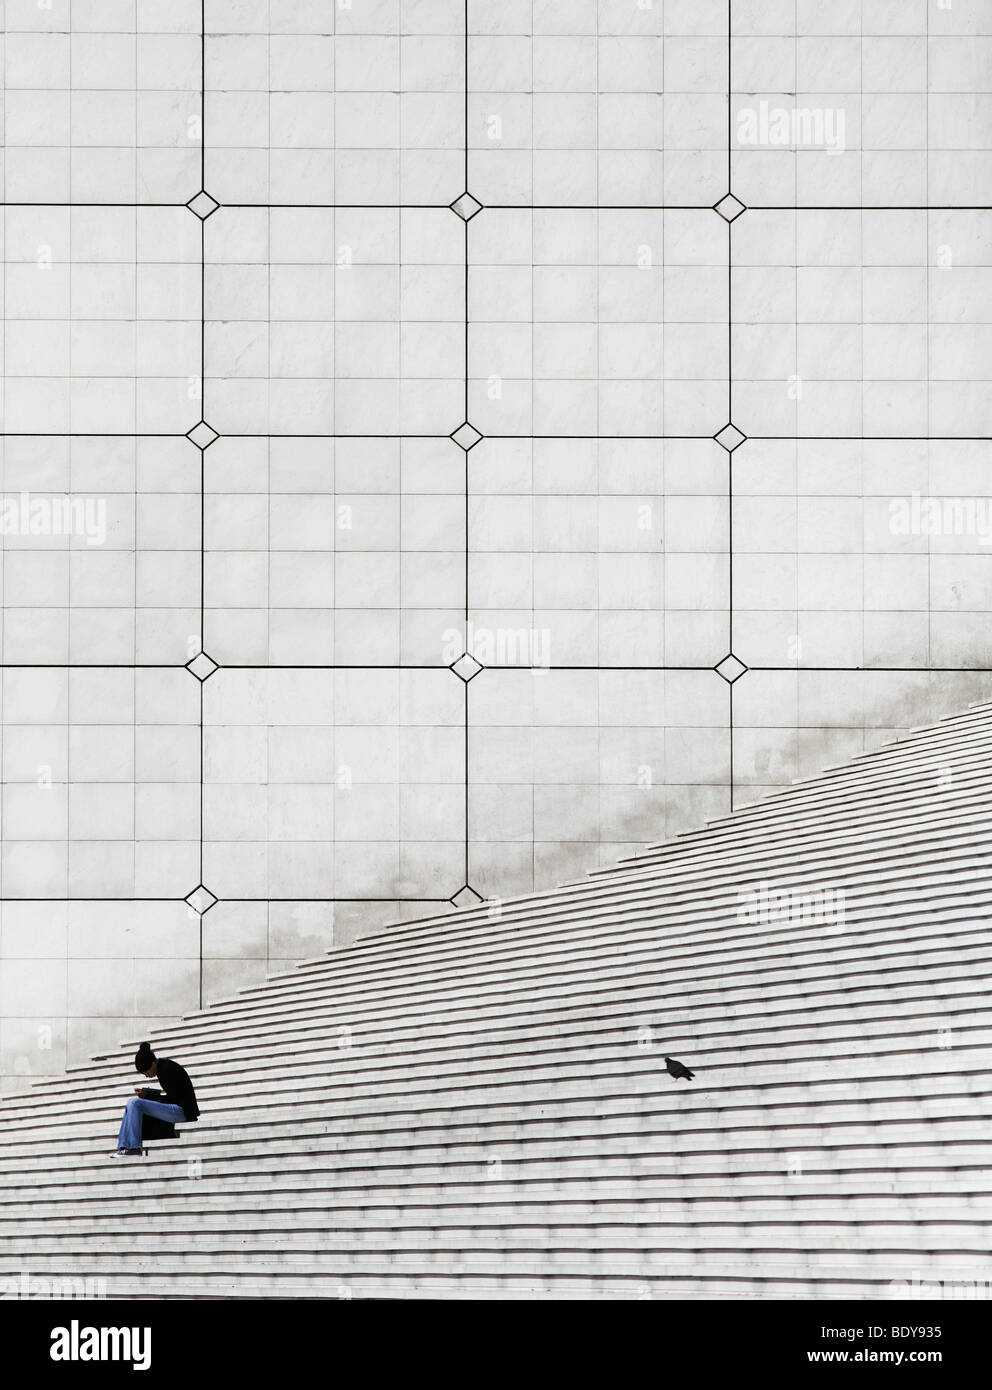 Woman and dove on stairs, La Grande Arche, La Defense, Paris, France, Europe Stock Photo